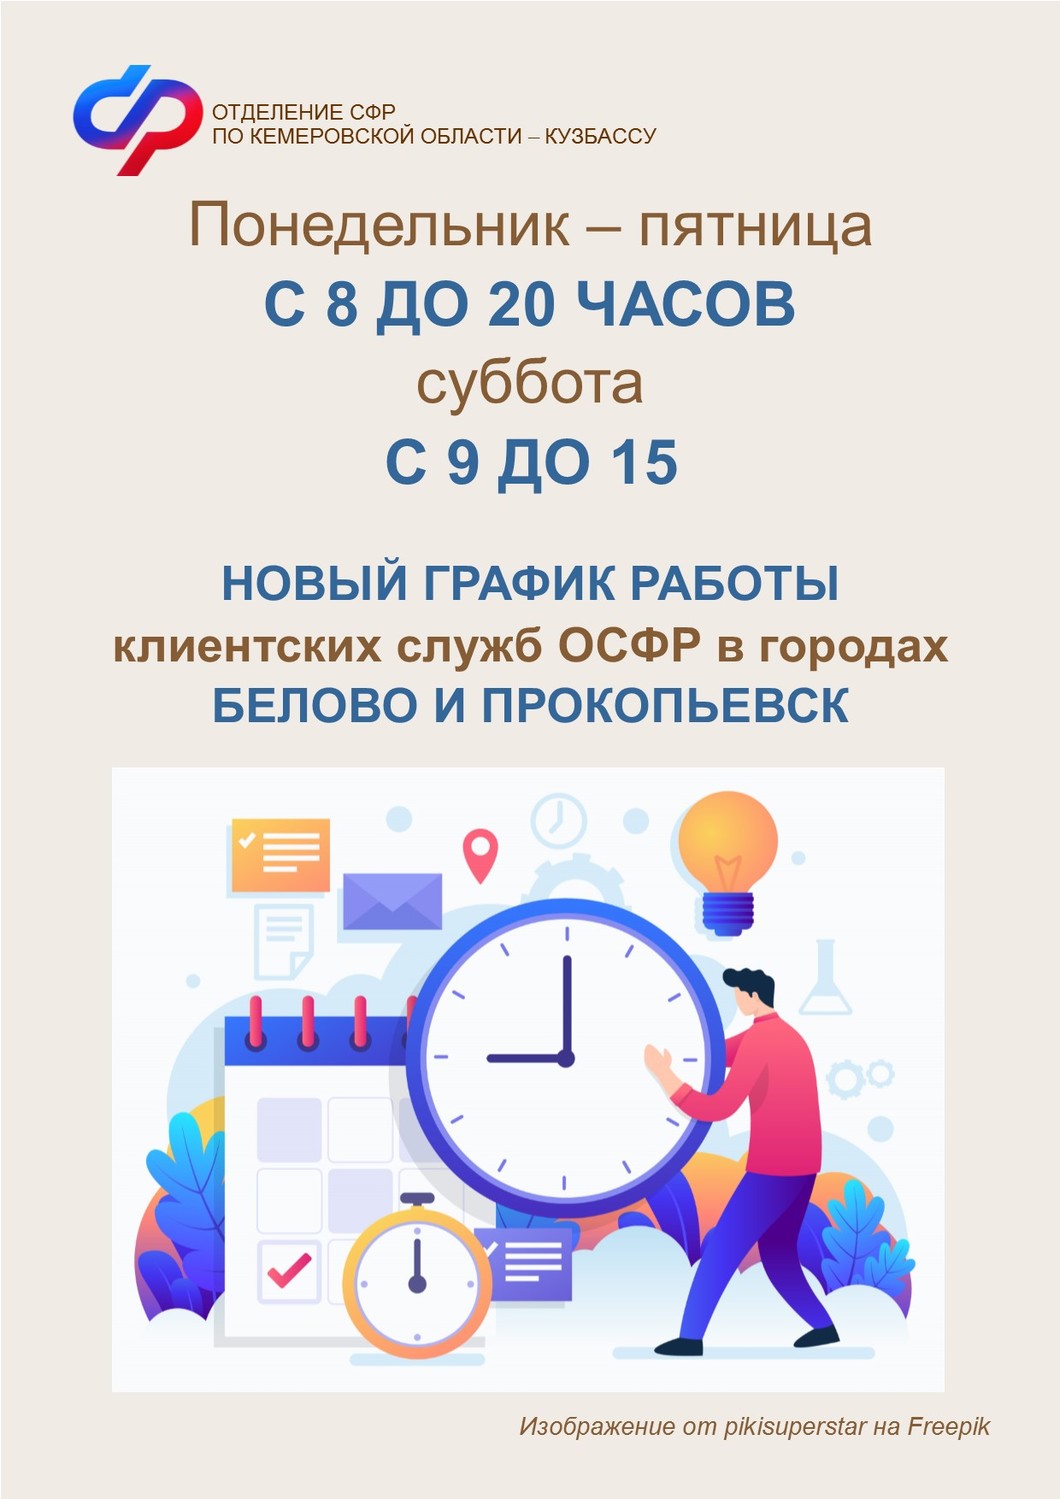 Клиентские службы Белова и Прокопьевска работают с понедельника по субботу